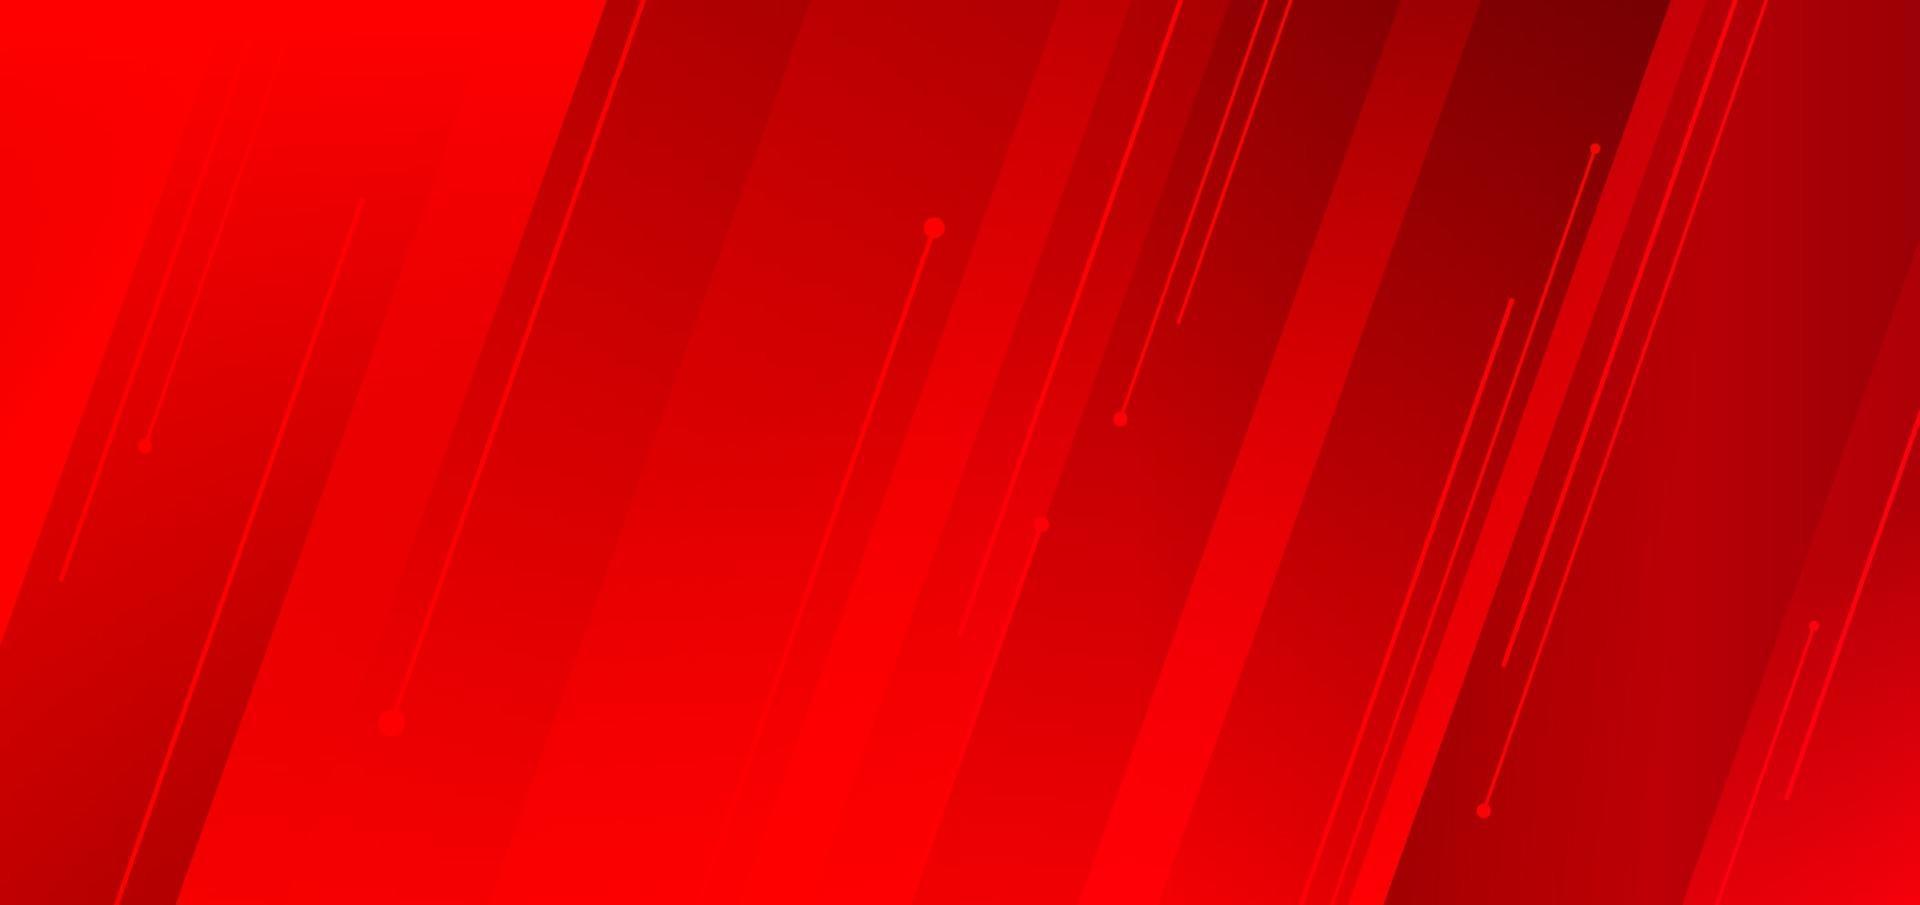 abstracte moderne diagonale strepen rode achtergrond en textuur met lijnen. vector